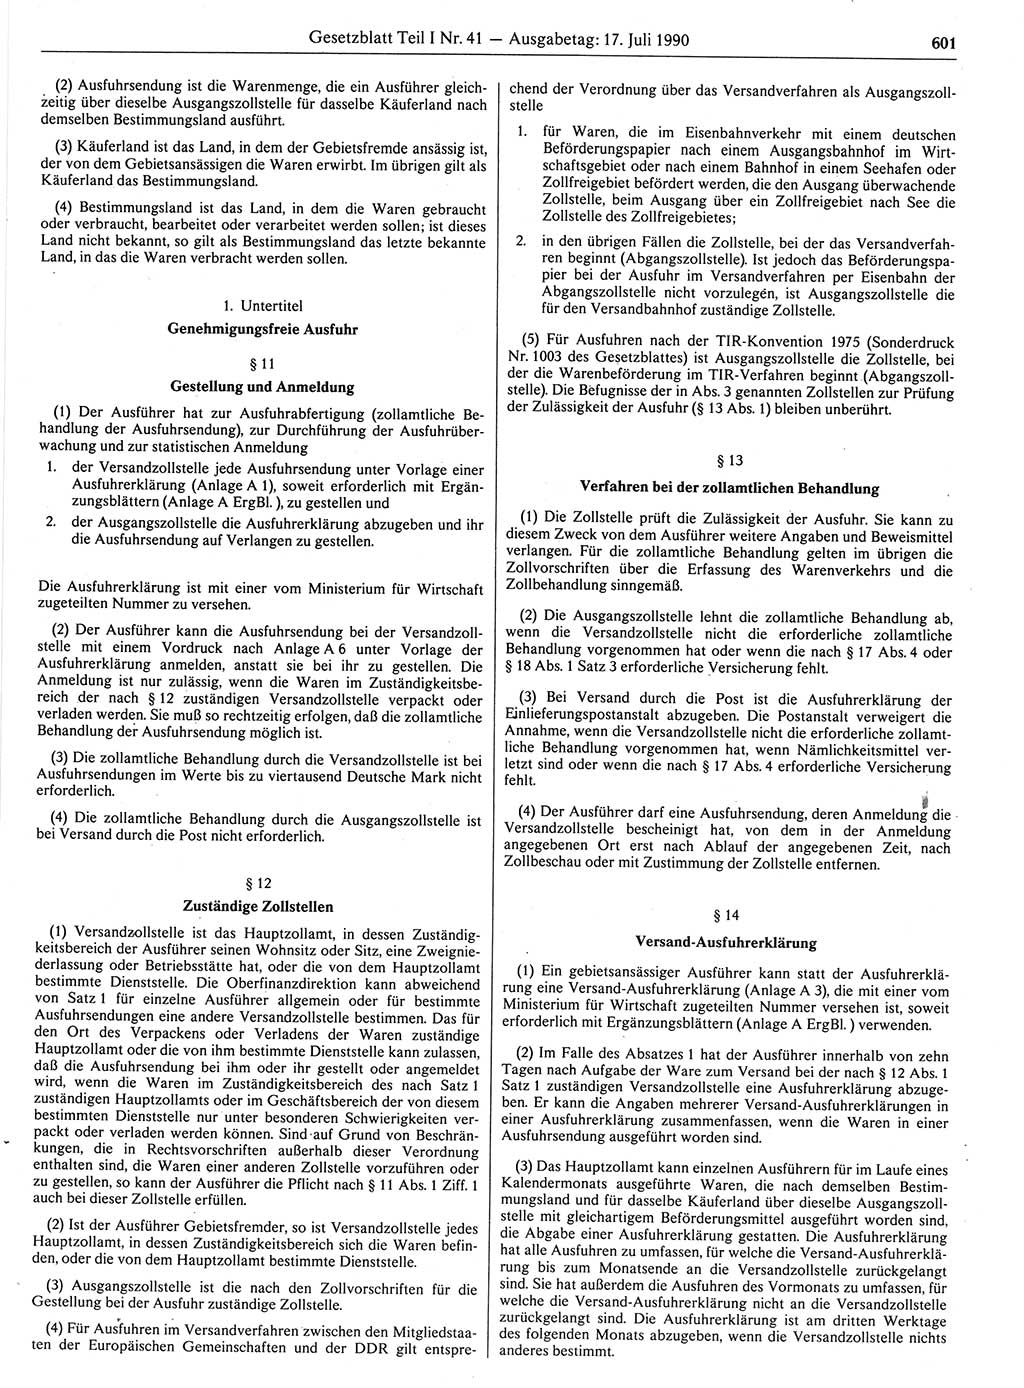 Gesetzblatt (GBl.) der Deutschen Demokratischen Republik (DDR) Teil Ⅰ 1990, Seite 601 (GBl. DDR Ⅰ 1990, S. 601)